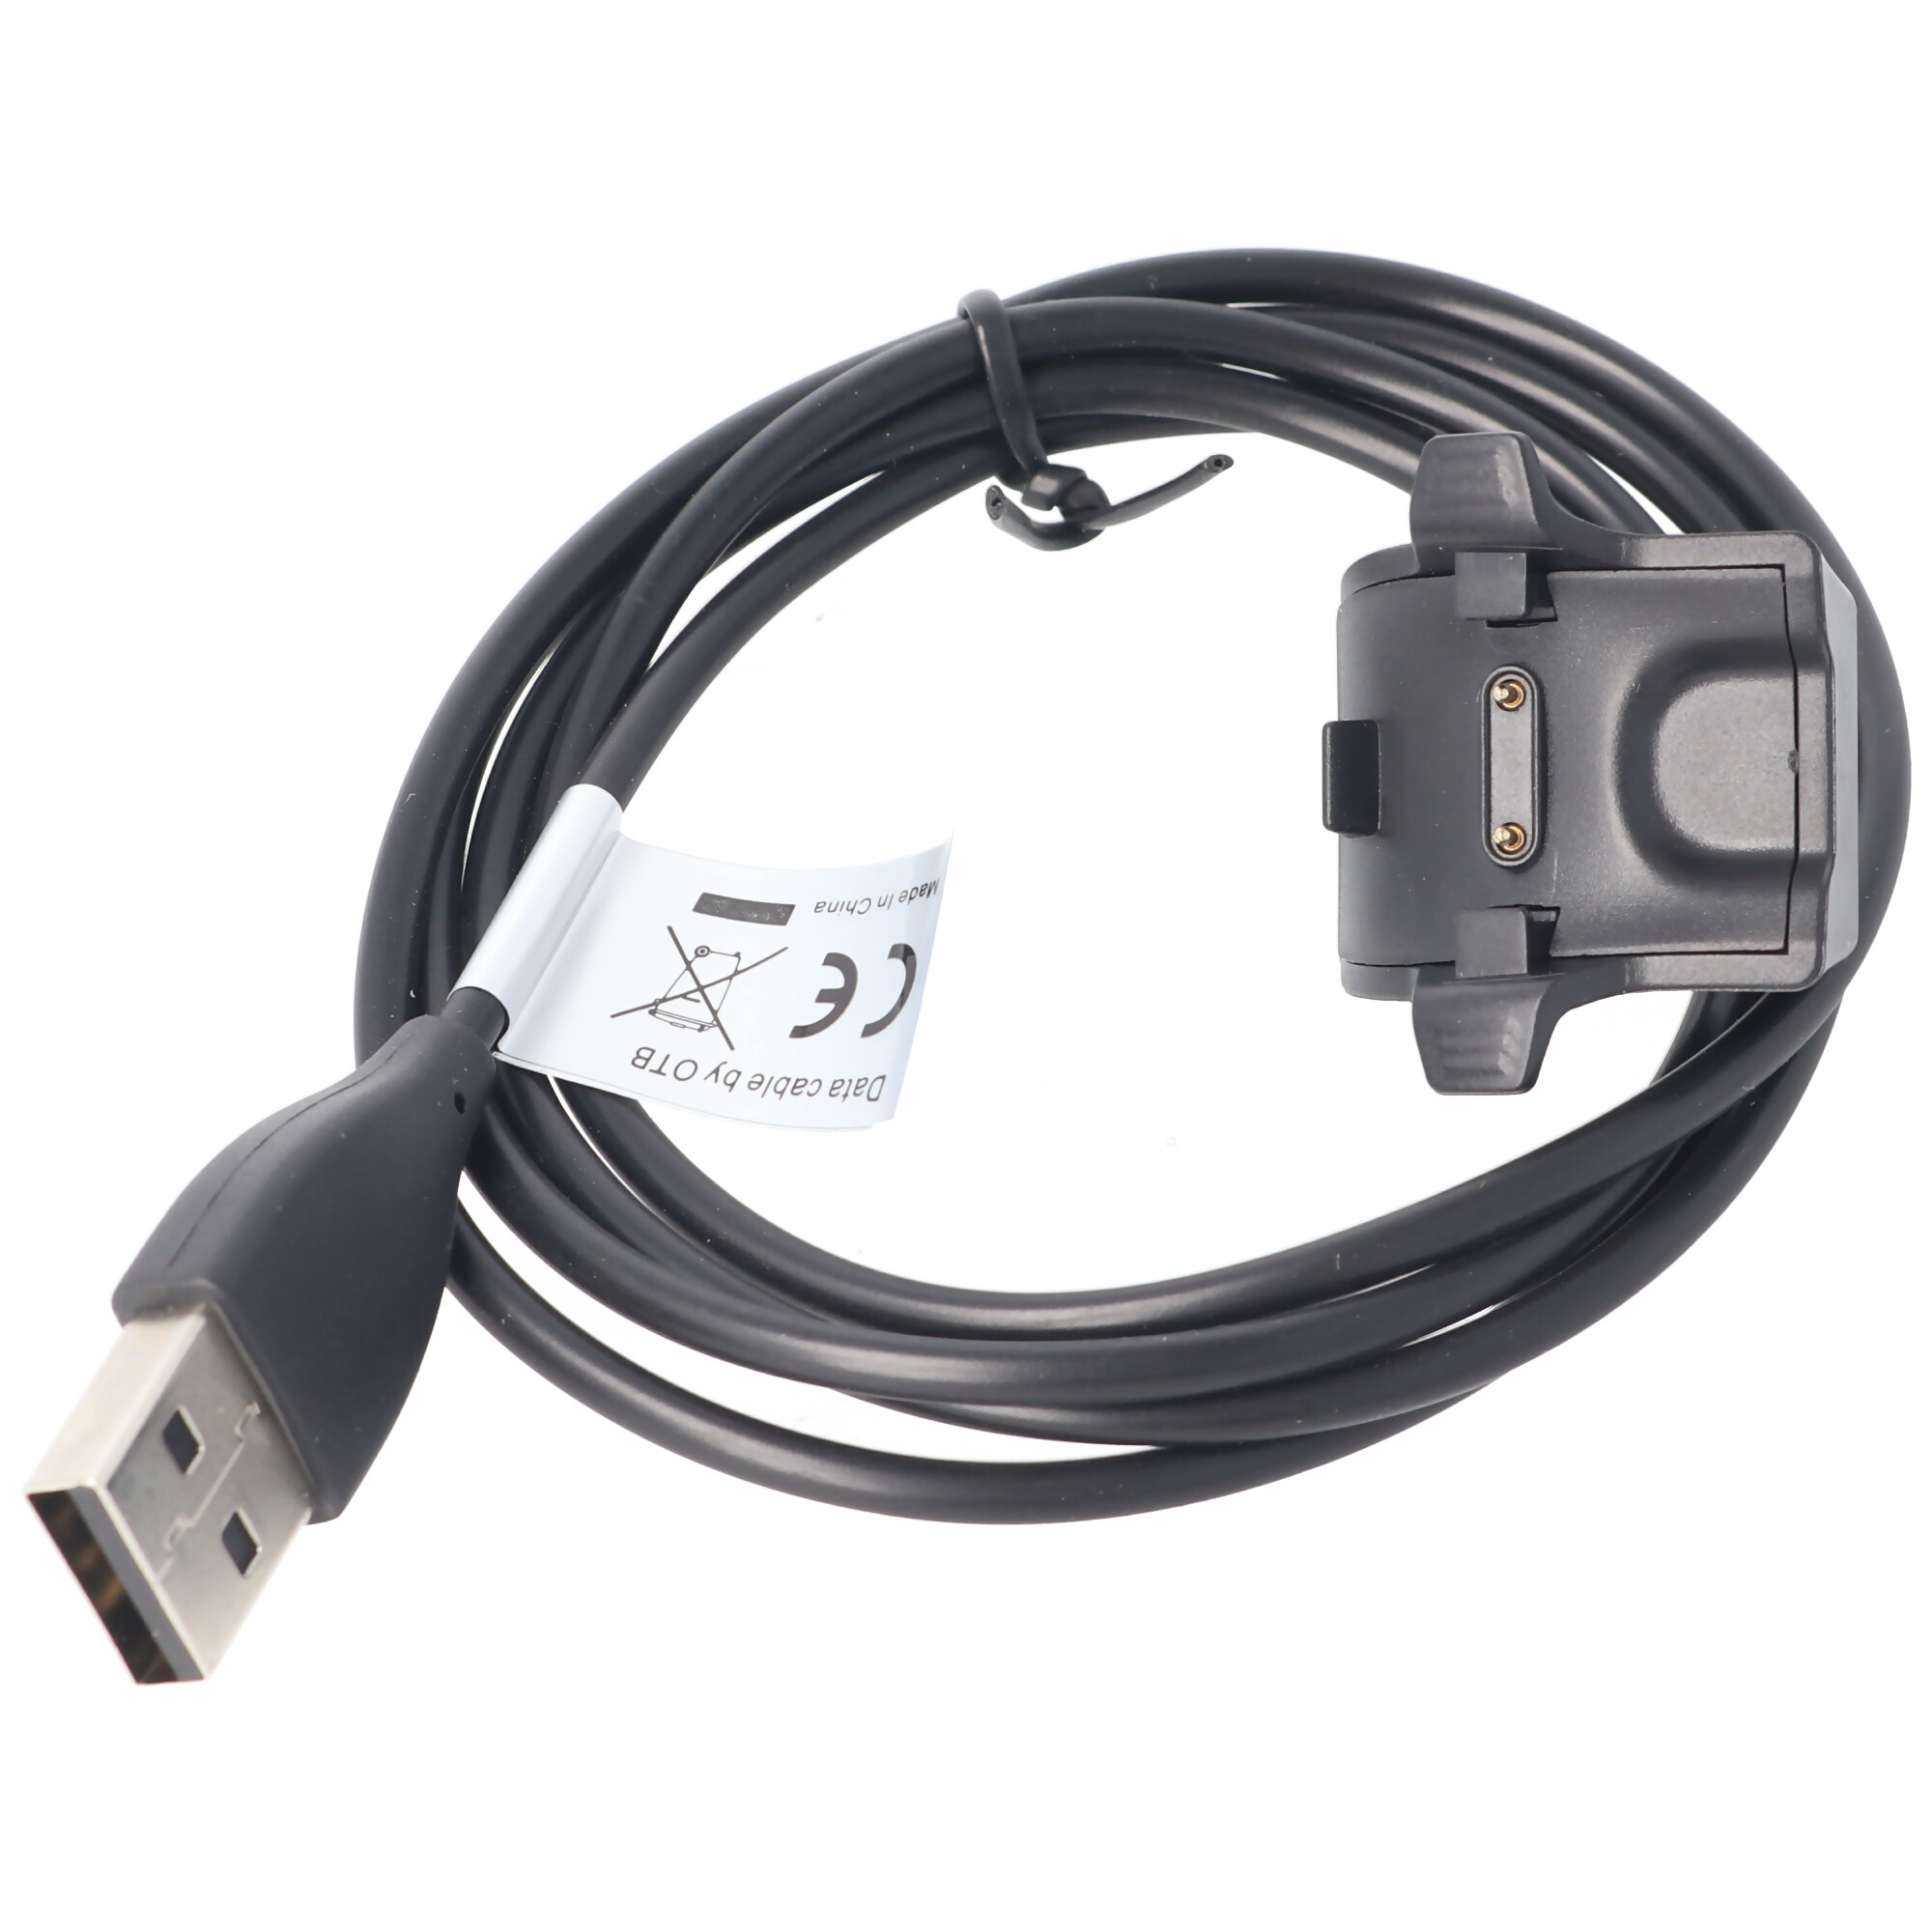 USB Ladekabel Ersatzkabel Ladeadapter für Huawei Band 3 Band 3 Pro Ladegerät 